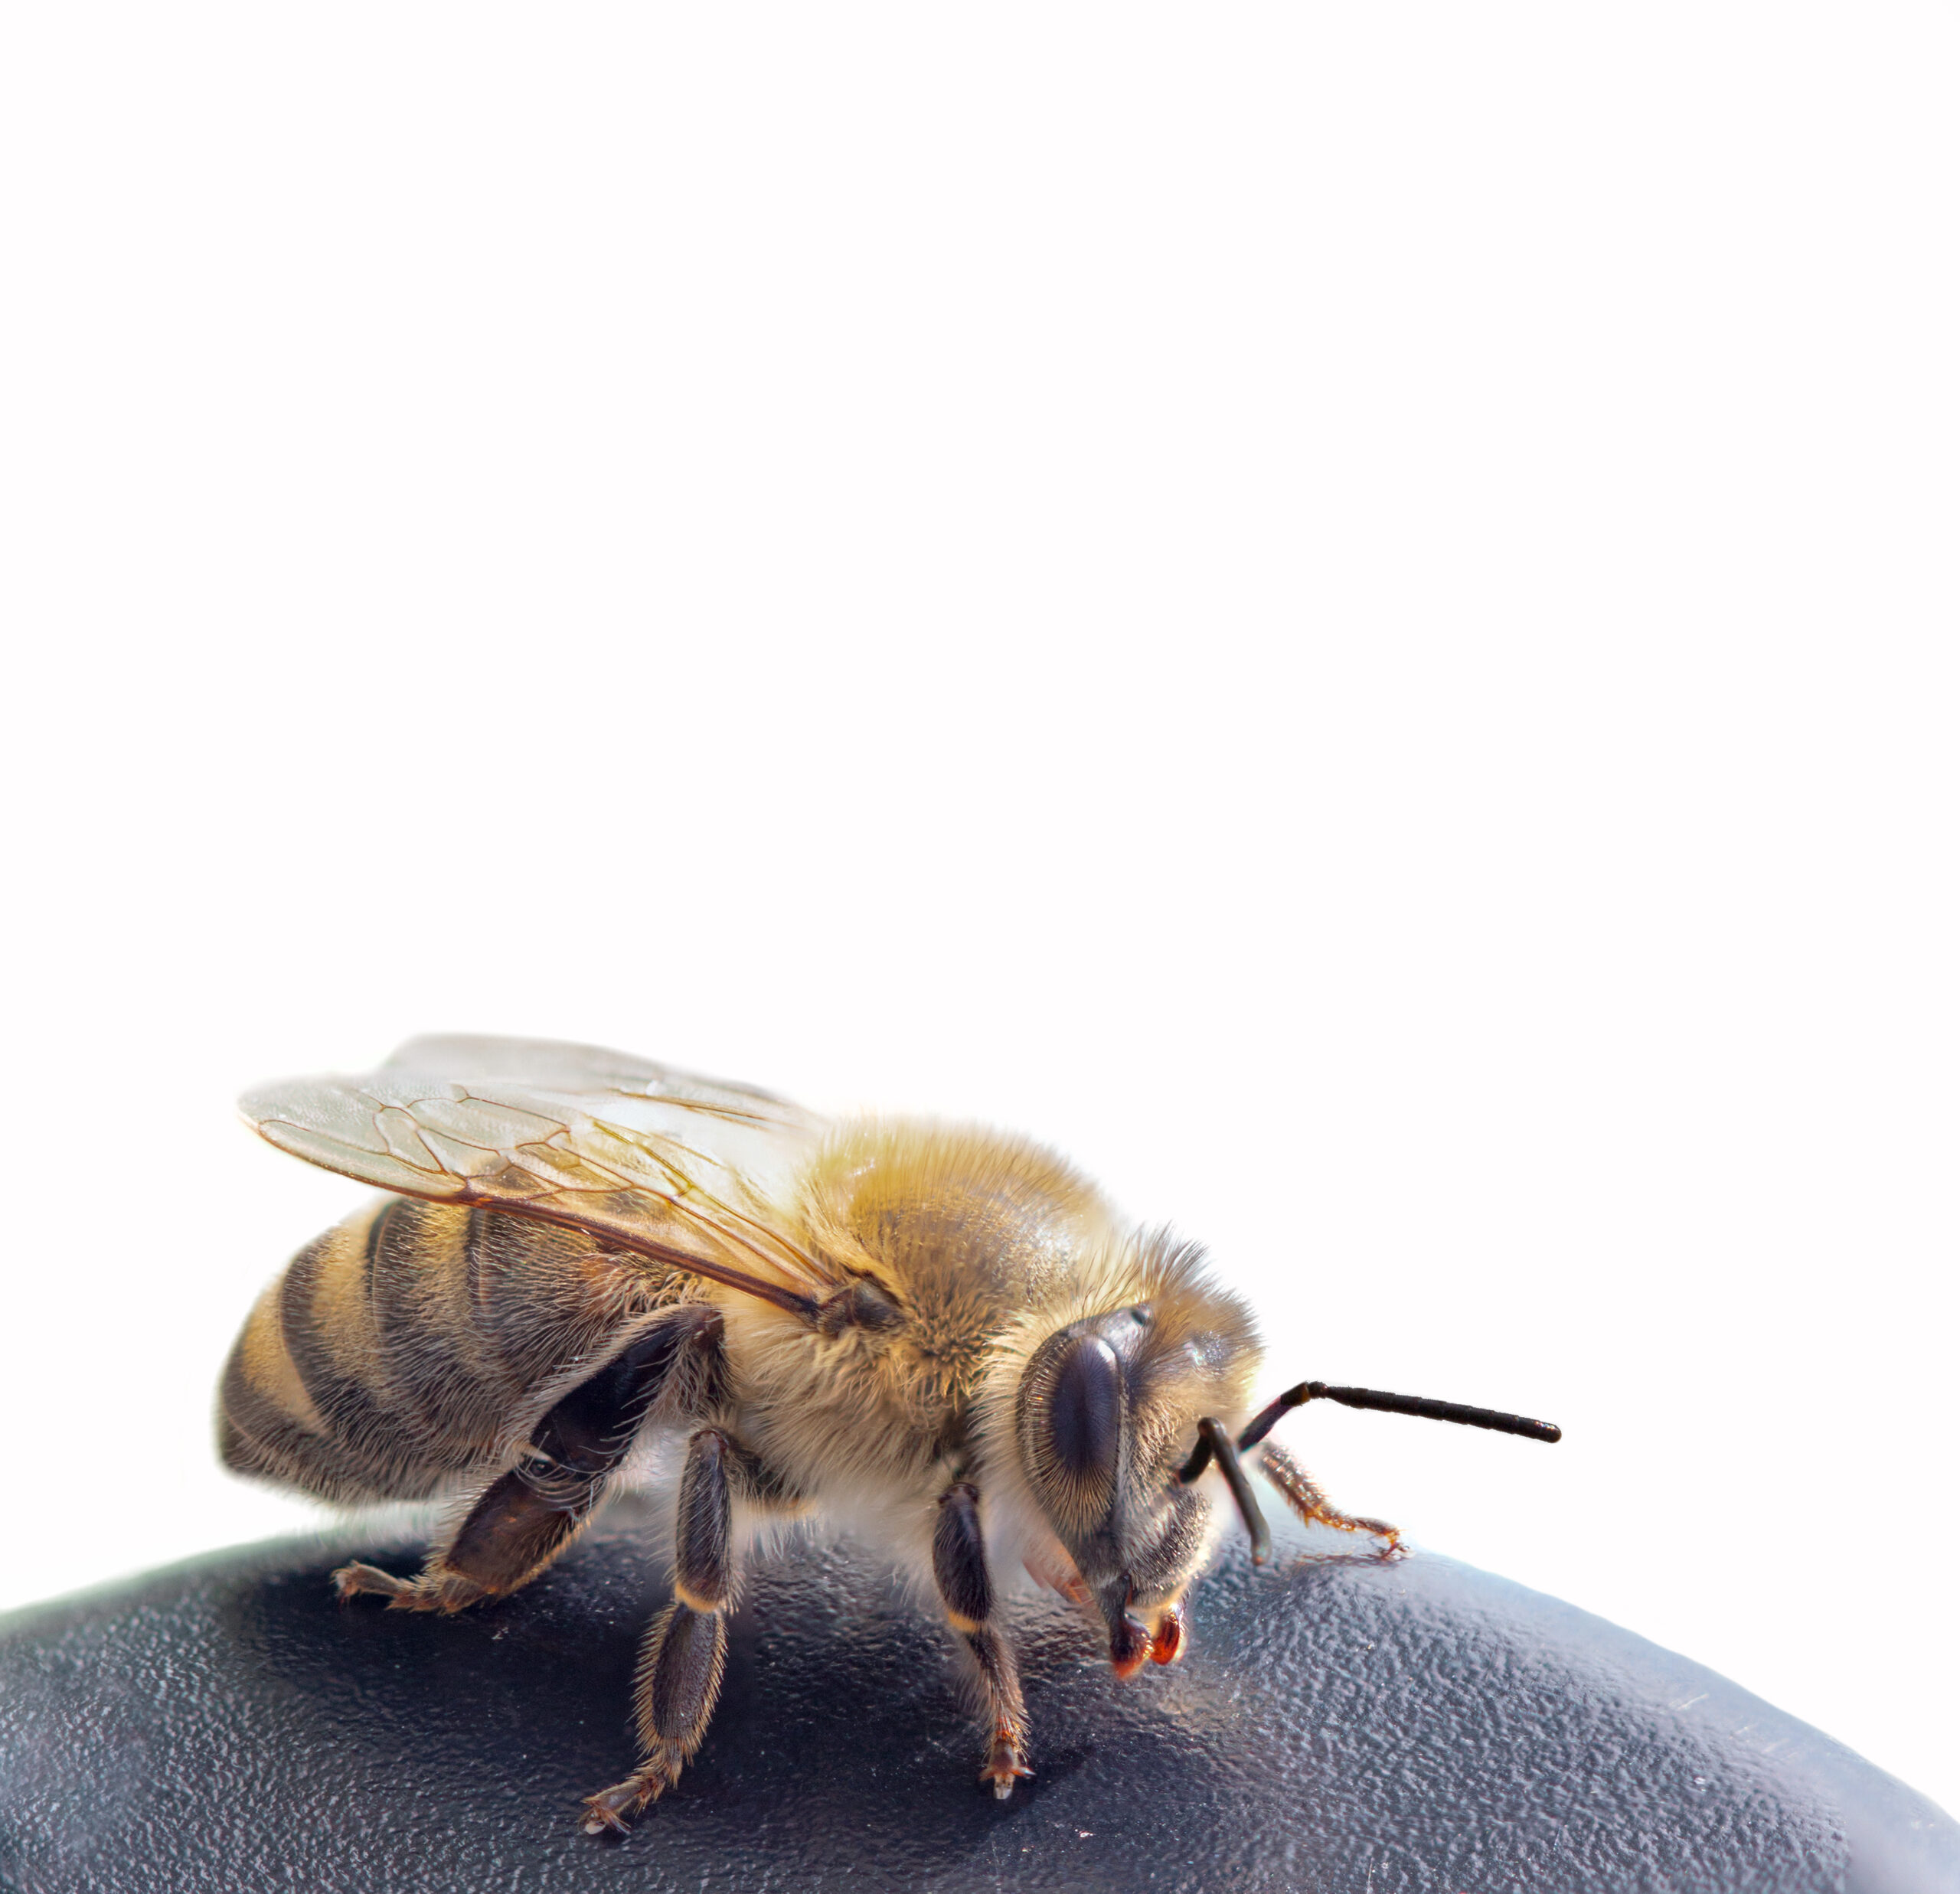 Honigbiene Eine Umsiedlung kann helfen, diese Konflikte zu vermeiden. Dabei wird das Nest vorsichtig entfernt und an einen sicheren Ort eines anderen Standorts umgesiedelt. Dadurch können die Insekten ihre Aktivitäten weiterhin ausführen, ohne dass sie eine Gefahr für die Menschen darstellen. Es ist wichtig, dass solche Umsiedlungen von erfahrenen Experten durchgeführt werden, da Hornissen, Wespen und Bienen potenziell gefährlich sein können, wenn sie gestört werden. Die Umsiedlung sollte möglichst schnell durchgeführt werden, um die Entwicklung des Nestes und der Insekten nicht zu beeinträchtigen. Insgesamt trägt die Umsiedlung von Hornissen, Wespen und Bienen dazu bei sowohl die Insekten als auch die Menschen zu schützen und die Ökosysteme in Balance zu halten. Es ist eine wichtige Maßnahme zur Erhaltung der Biodiversität und zur Vermeidung von Konflikten zwischen Menschen und Insekten. Außerdem sollte man sich bewusst darüber sein, dass eine Umsiedlung nicht immer die beste Option ist. In manchen Fällen kann es besser sein, das Nest zu zerstören, wenn es z.B. in einer gefährlichen Lage für Menschen oder Tiere ist. Es ist jedoch wichtig zu beachten, dass das Zerstören eines Nests nicht immer ungefährlich ist und nur von erfahrenen Experten durchgeführt werden sollte, um die Gefahr für Menschen und Tiere zu minimieren. Eine Alternative zur Umsiedlung oder Zerstörung von Nestern ist die Erhaltung natürlicher Lebensräume und die Reduktion des Einsatzes von Pestiziden. Dies kann dazu beitragen, Konflikte zwischen Menschen und Insekten zu vermeiden und gleichzeitig die Biodiversität und Ökosysteme zu erhalten. Insgesamt ist es wichtig, Hornissen, Wespen und Bienen angemessen zu schützen und zu erhalten, um die Biodiversität und die Gesundheit unserer Ökosysteme zu garantieren. Umsiedlungen sollten nur als letztes Mittel und von erfahrenen Experten durchgeführt werden und es sollte immer versucht werden, Konflikte durch andere Maßnahmen zu vermeiden.